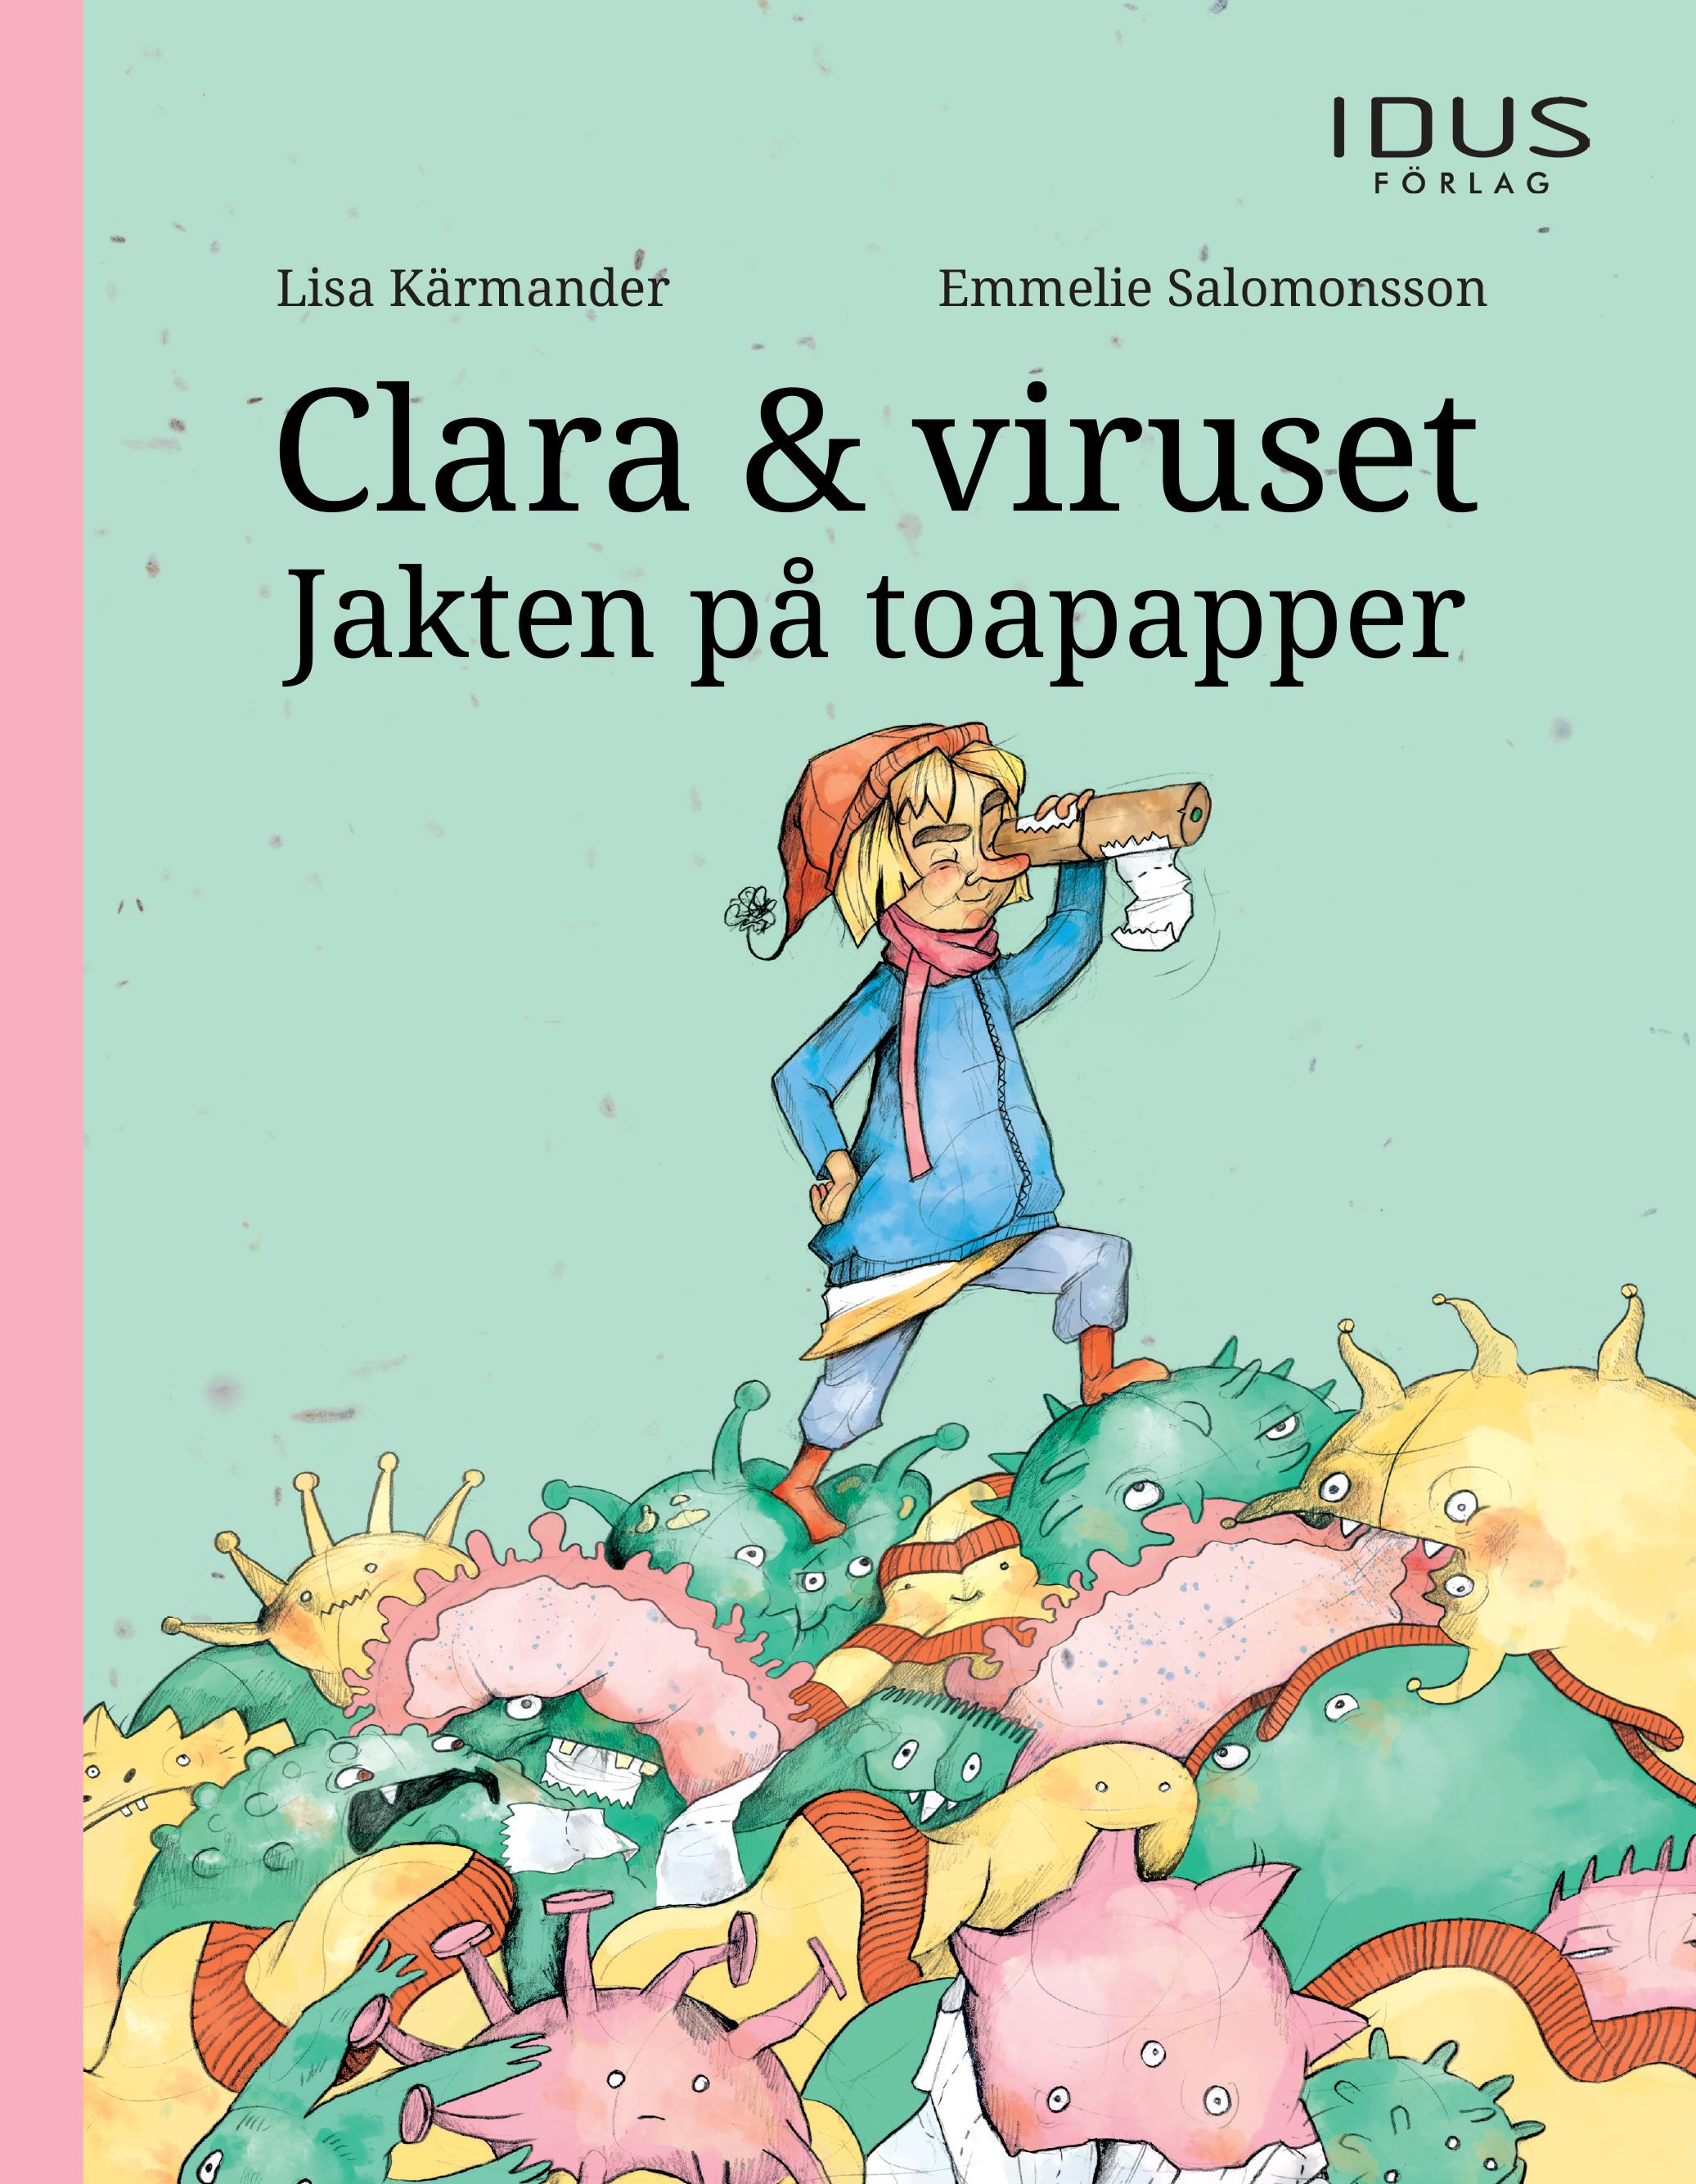 Clara & viruset : Jakten på toapapper, eBook by Lisa Kärmander